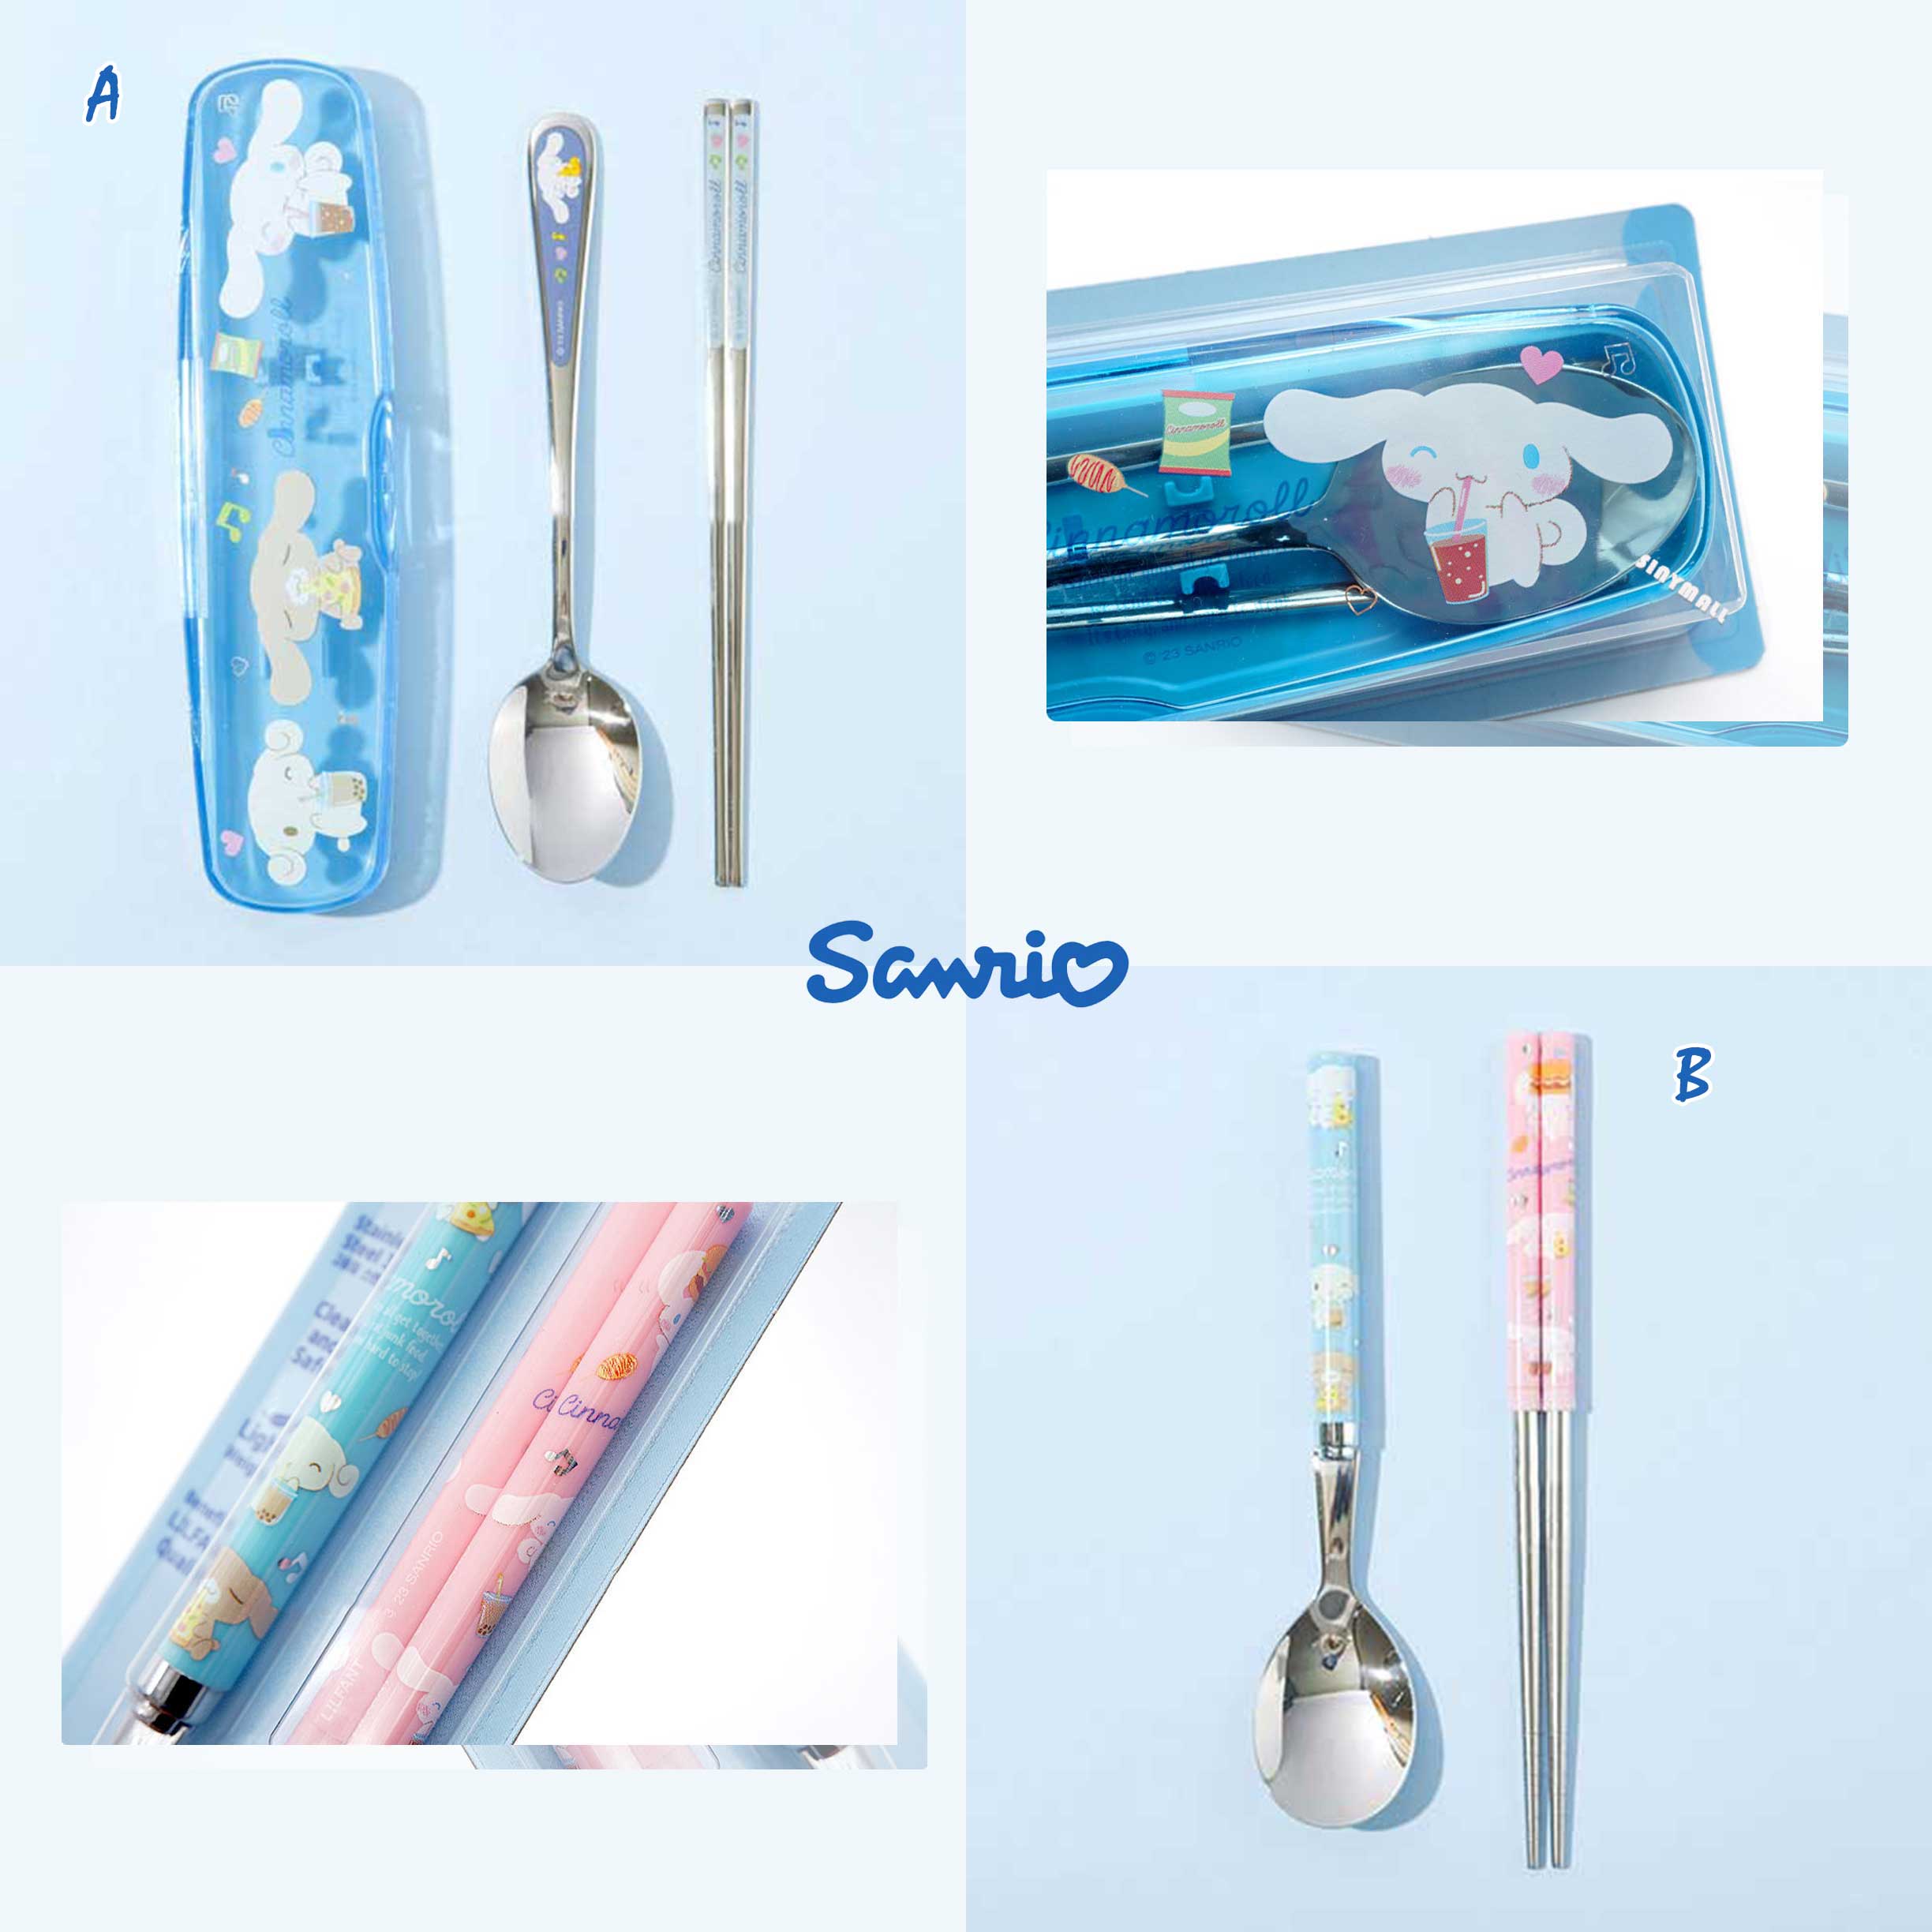 不鏽鋼餐具組-大耳狗 三麗鷗 Sanrio 韓國進口正版授權